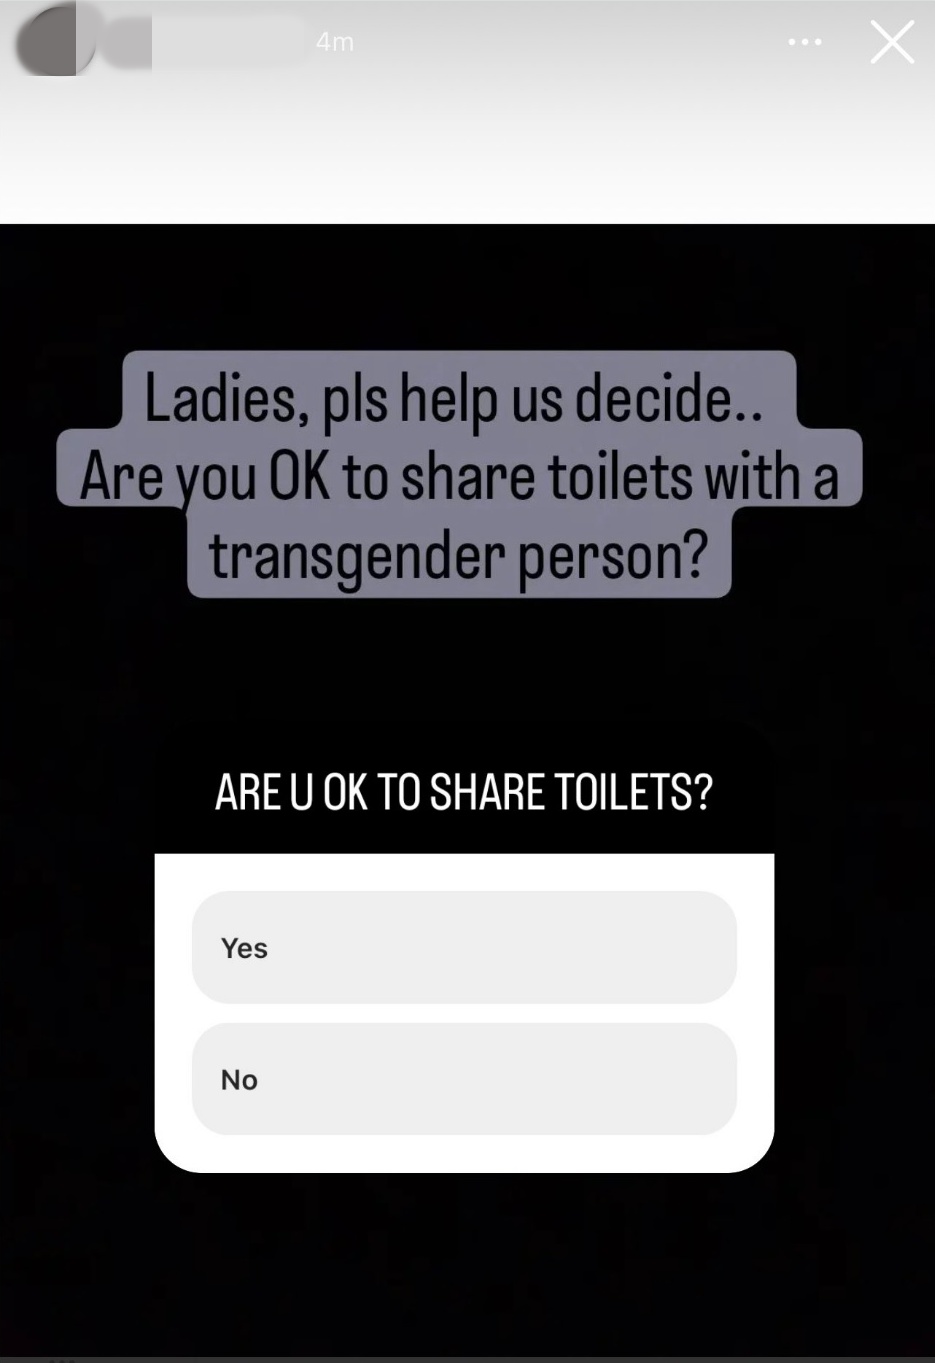 跨性别者被拒入夜店 “我们没有中性厕所”